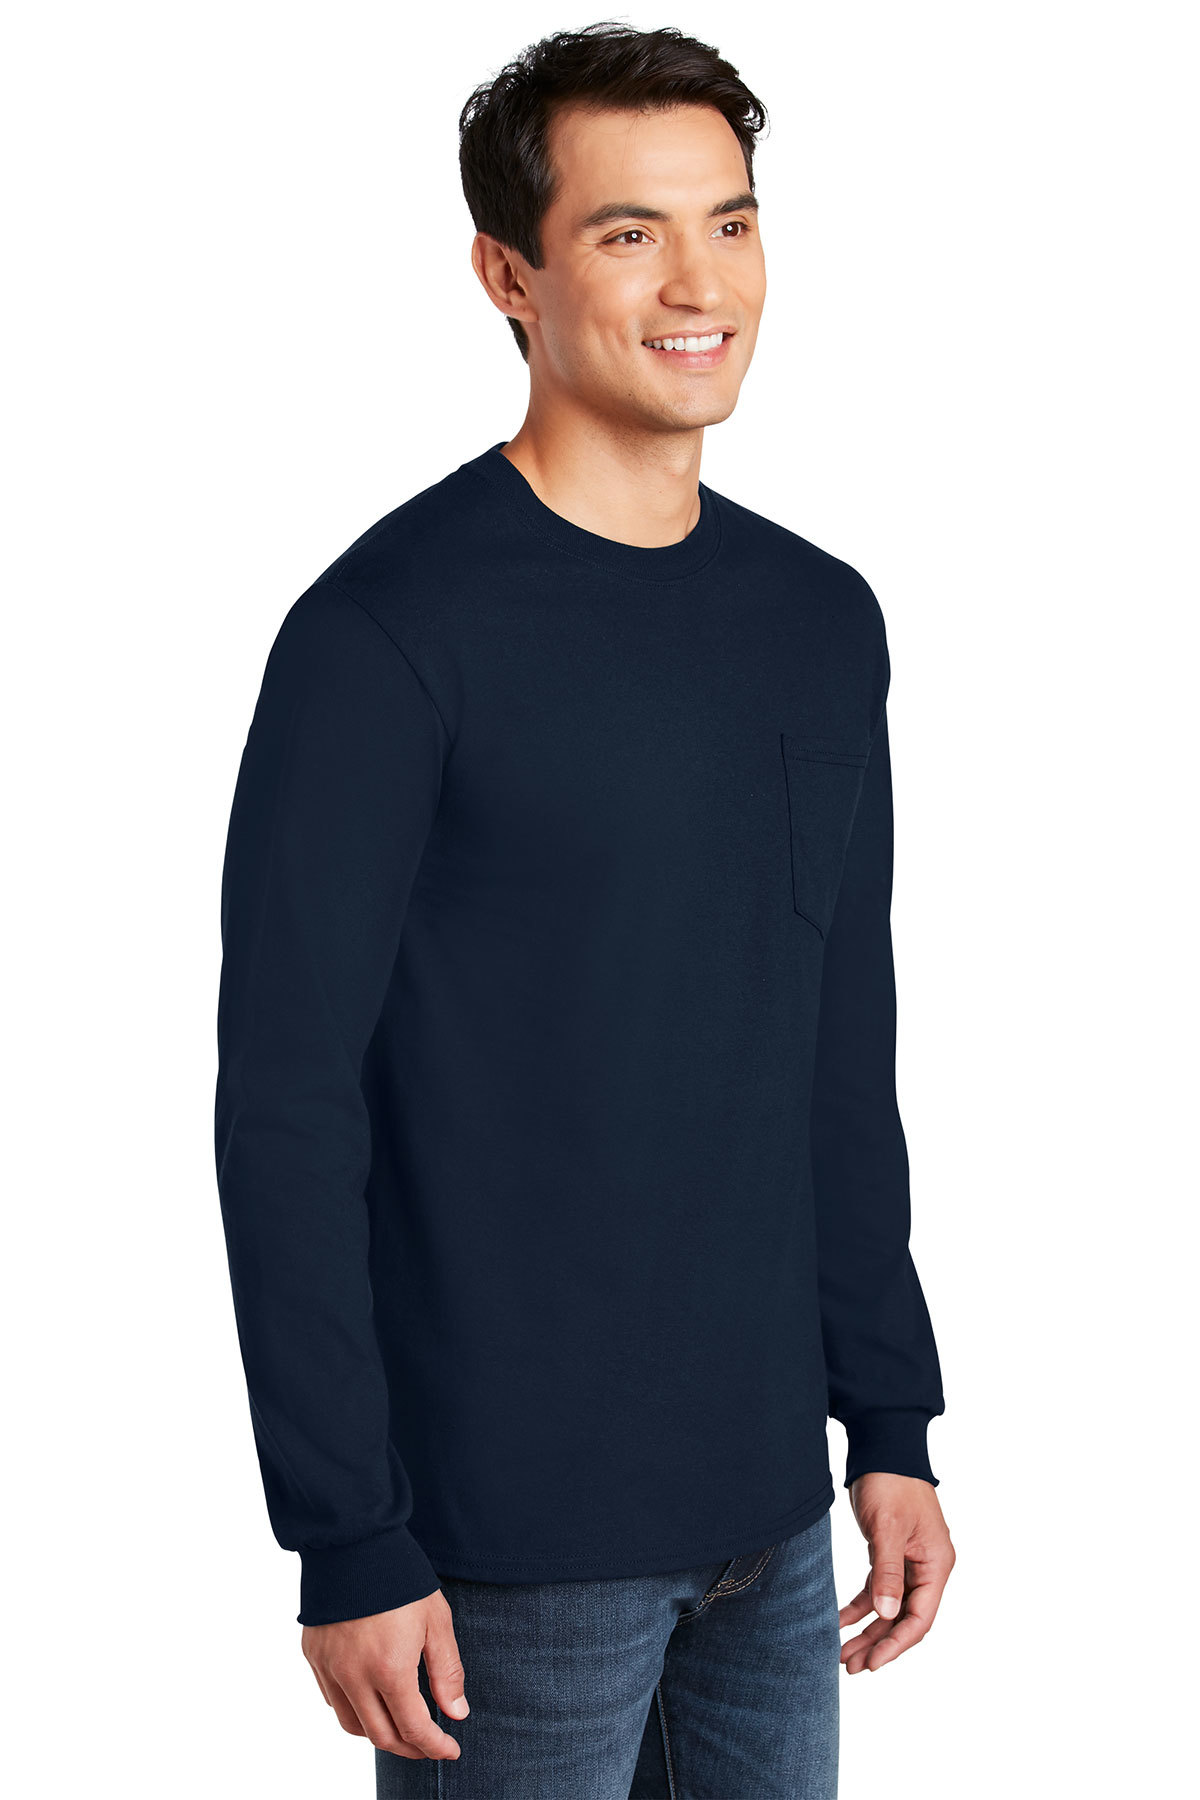 SanMar Wholesale Men's Navy Plain T-Shirt - Vl60, Case of 72, Options, Navy, Case of (72) Pieces